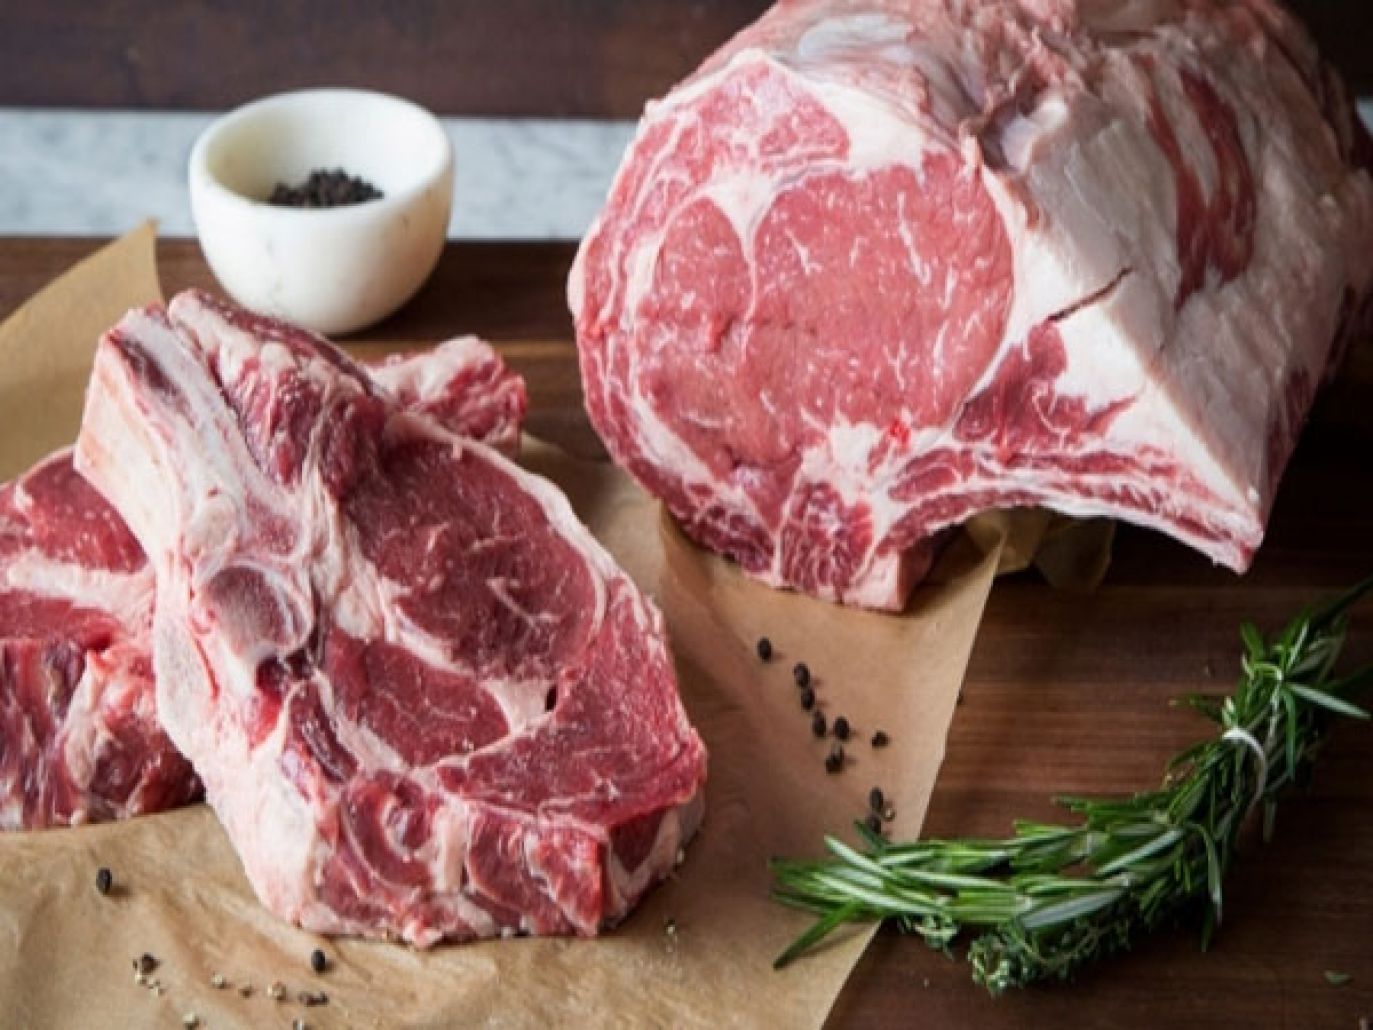 أسعار اللحوم اليوم الأثنين 11-10-2021 2